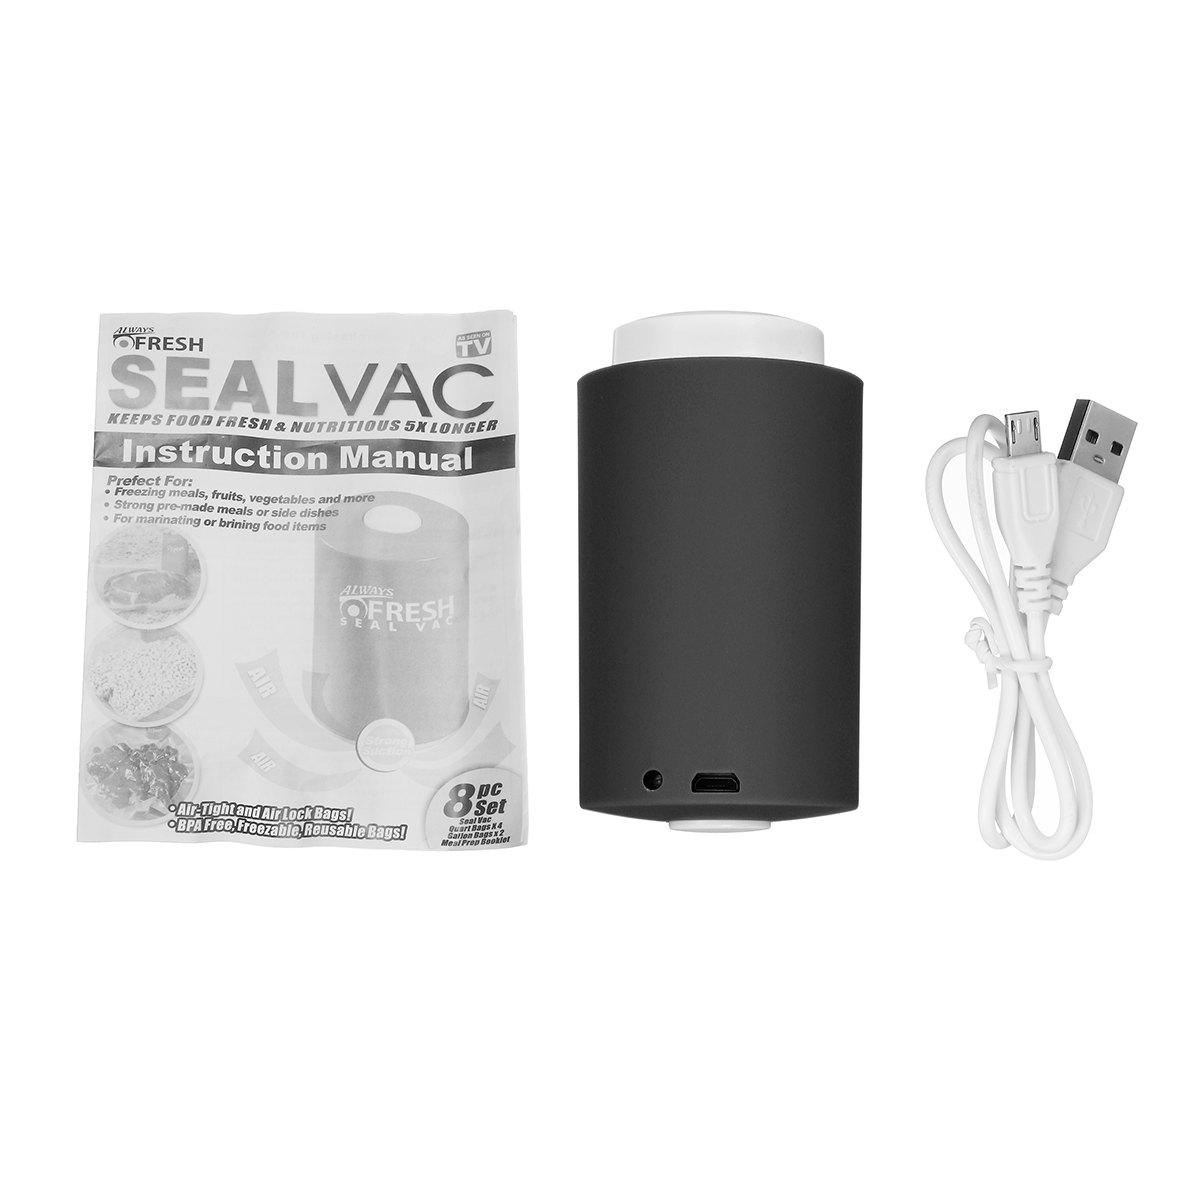 

Mini Automatic Compression Vacuum Pump Portable Electric Air Pump Food Sealer